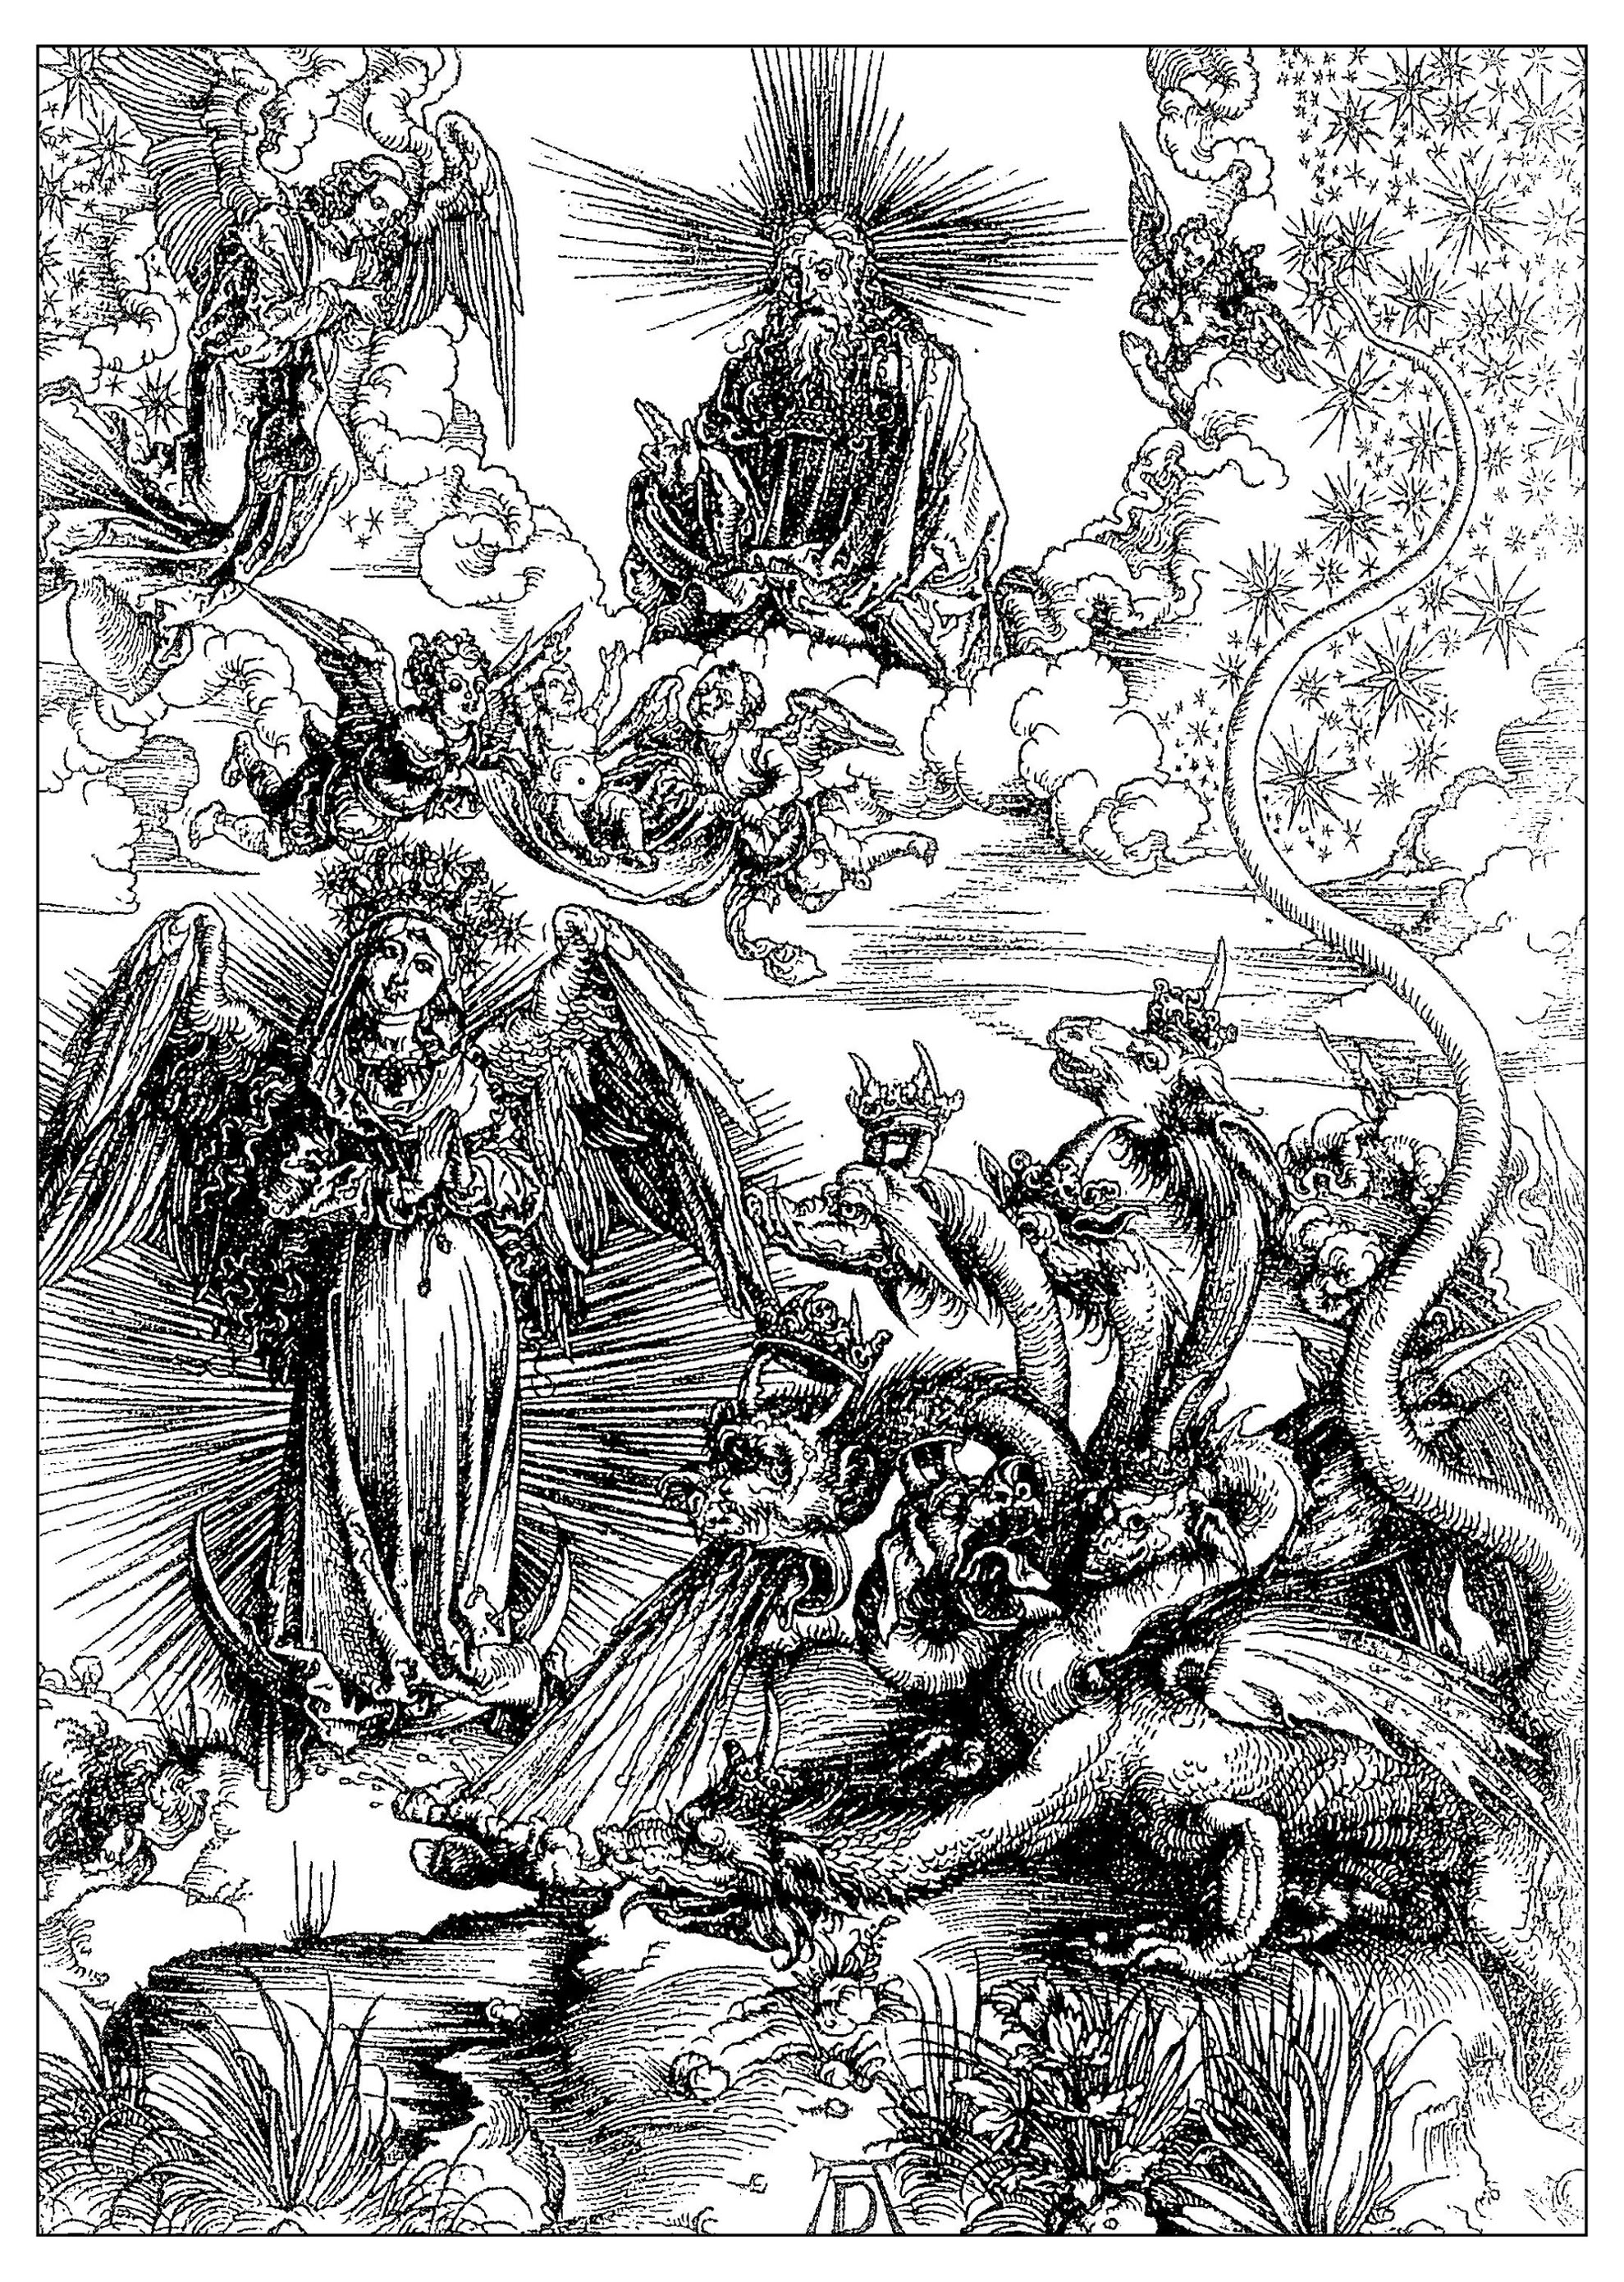 La mujer de Apocalipsis, grabado de Alberto Durero, hacia 1497